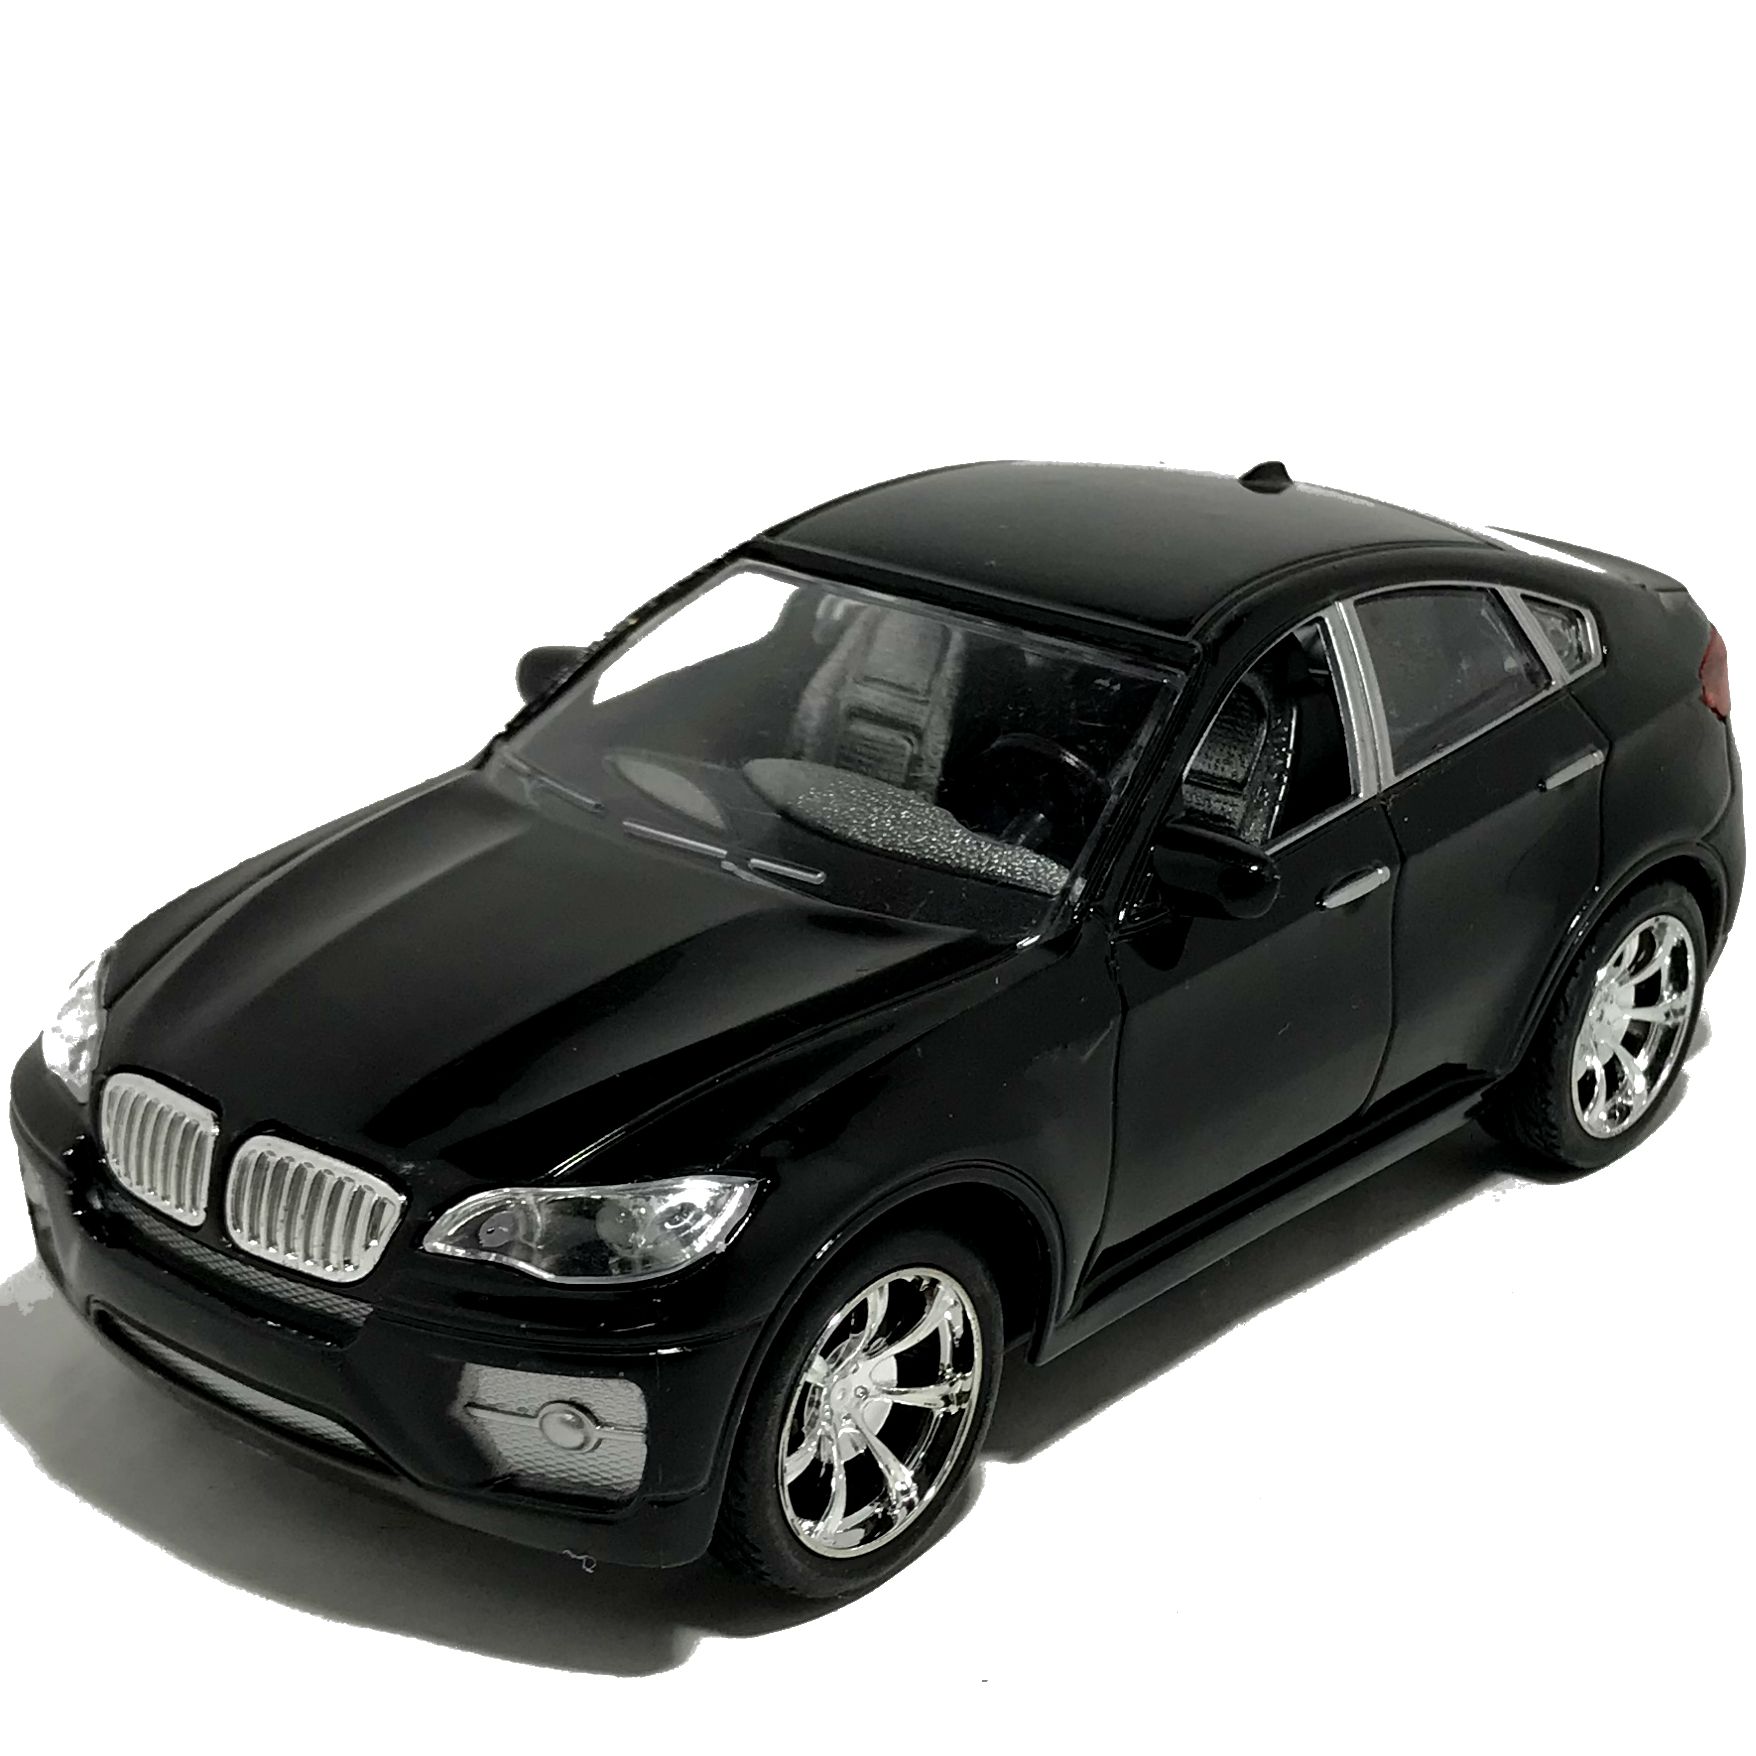 Бмв игрушка купить. Машинка "BMW x6" 344002sm. Машинка металлическая Технопарк BMW x6 12см черная x6-12-BK. Машинка BMW x3. BMW x6 игрушечная модель.